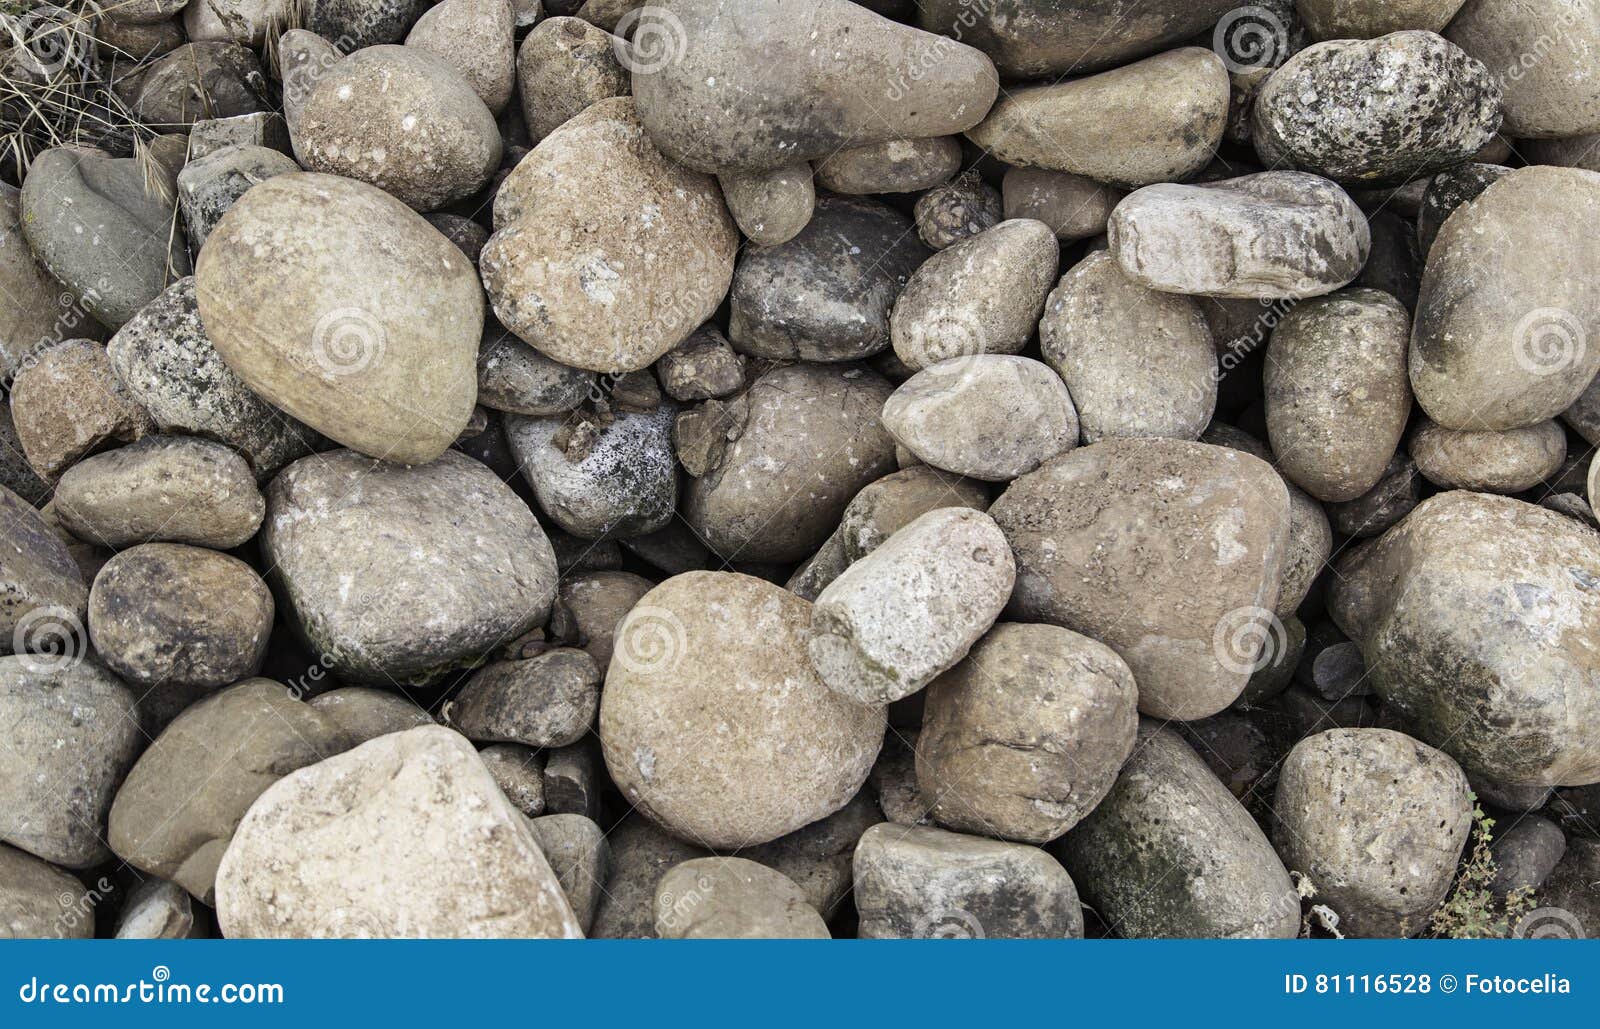 Comida chatarra invención Piedras duras del piso foto de archivo. Imagen de modelo - 81116528